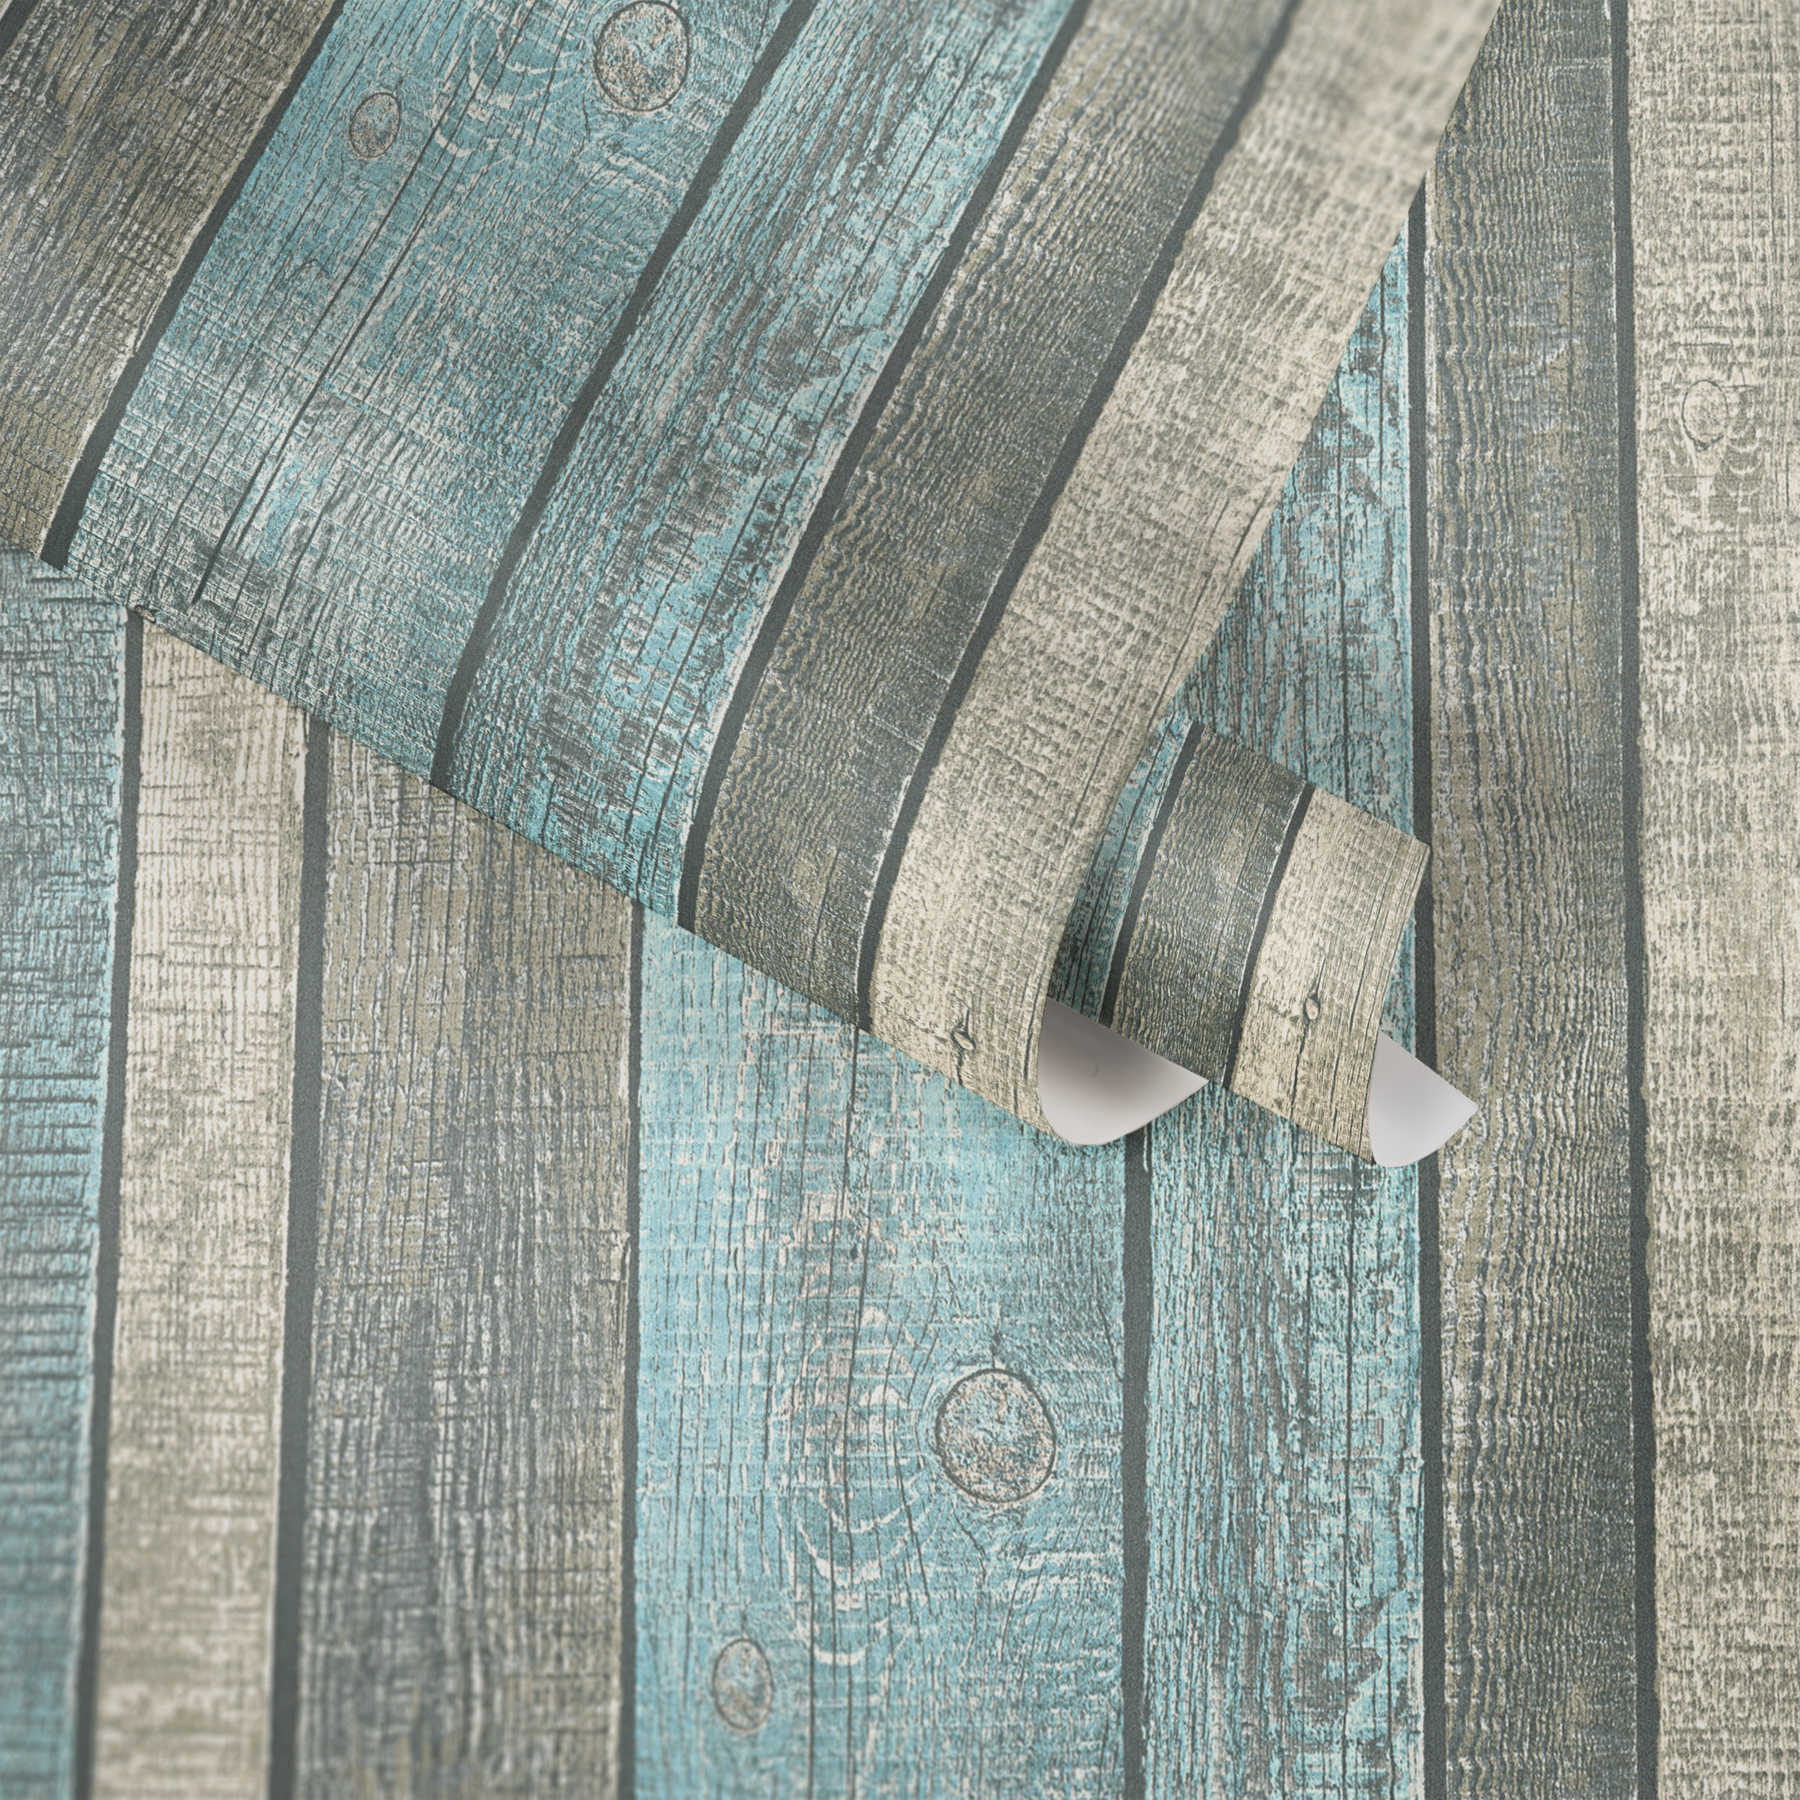             Papier peint imitation bois avec planches & veinures rustiques - bleu, gris, crème
        